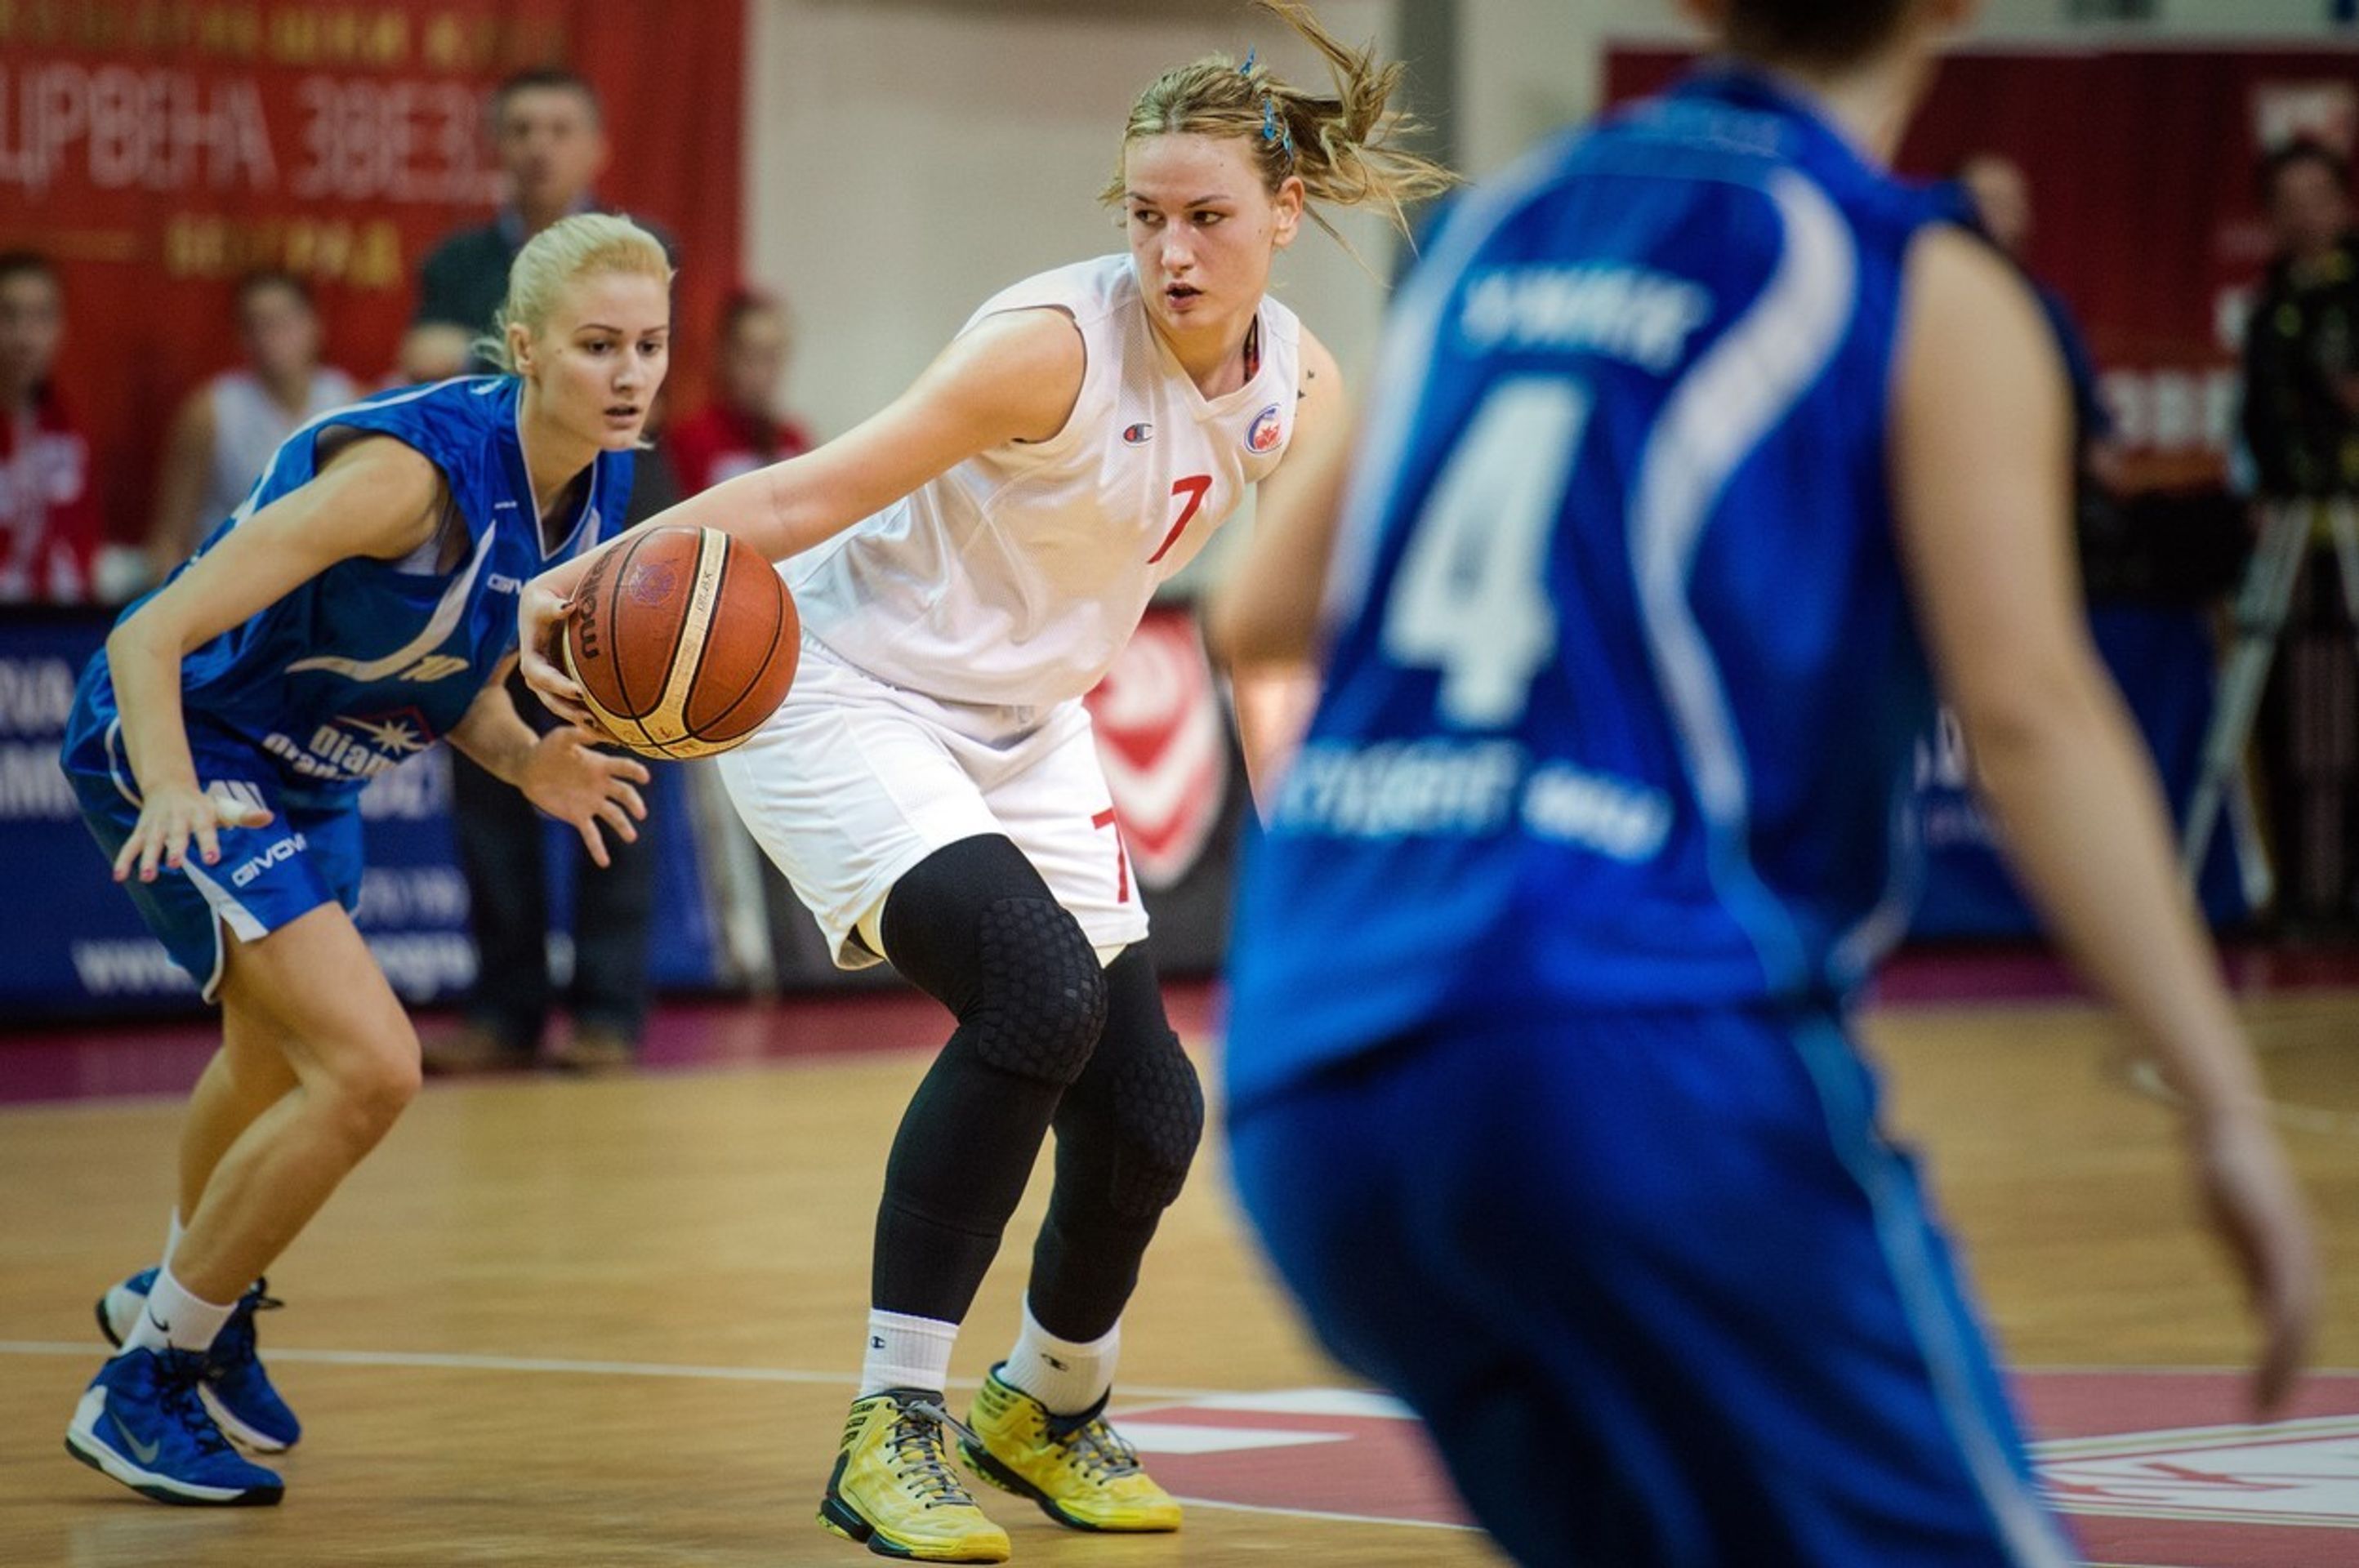 Srbská basketbalistka hraje s ortézou - 3 - GALERIE: Srbská basketbalistka hraje s protézou (5/7)